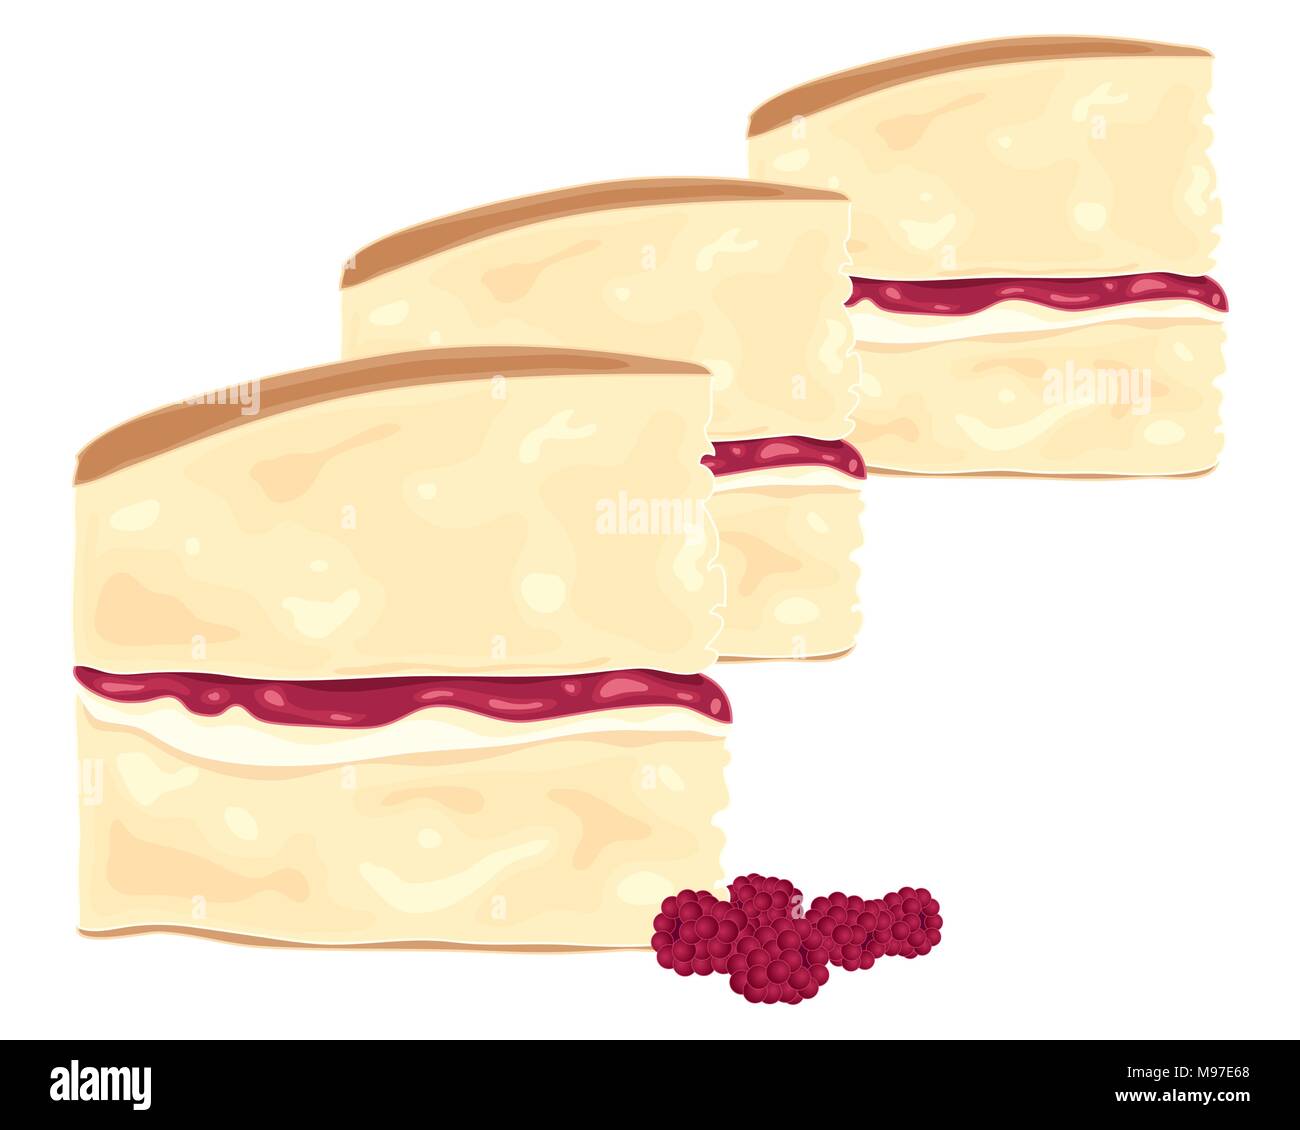 Une illustration de tranches de gâteau éponge victoria délicieux avec confiture de framboises et de la crème sur un fond blanc Illustration de Vecteur